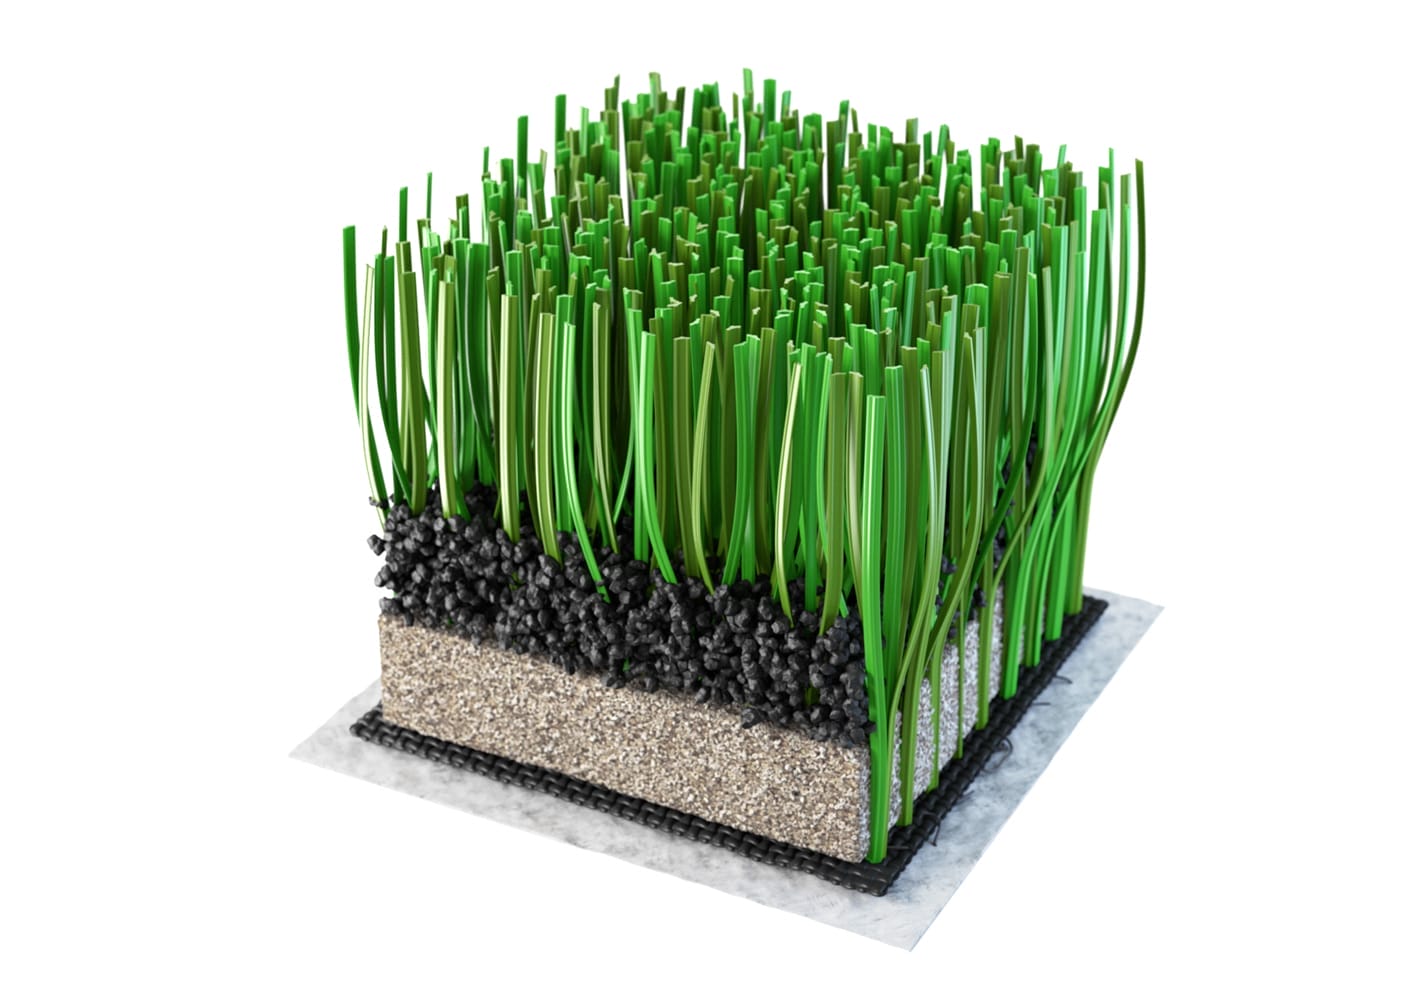 Xtreme artificial grass